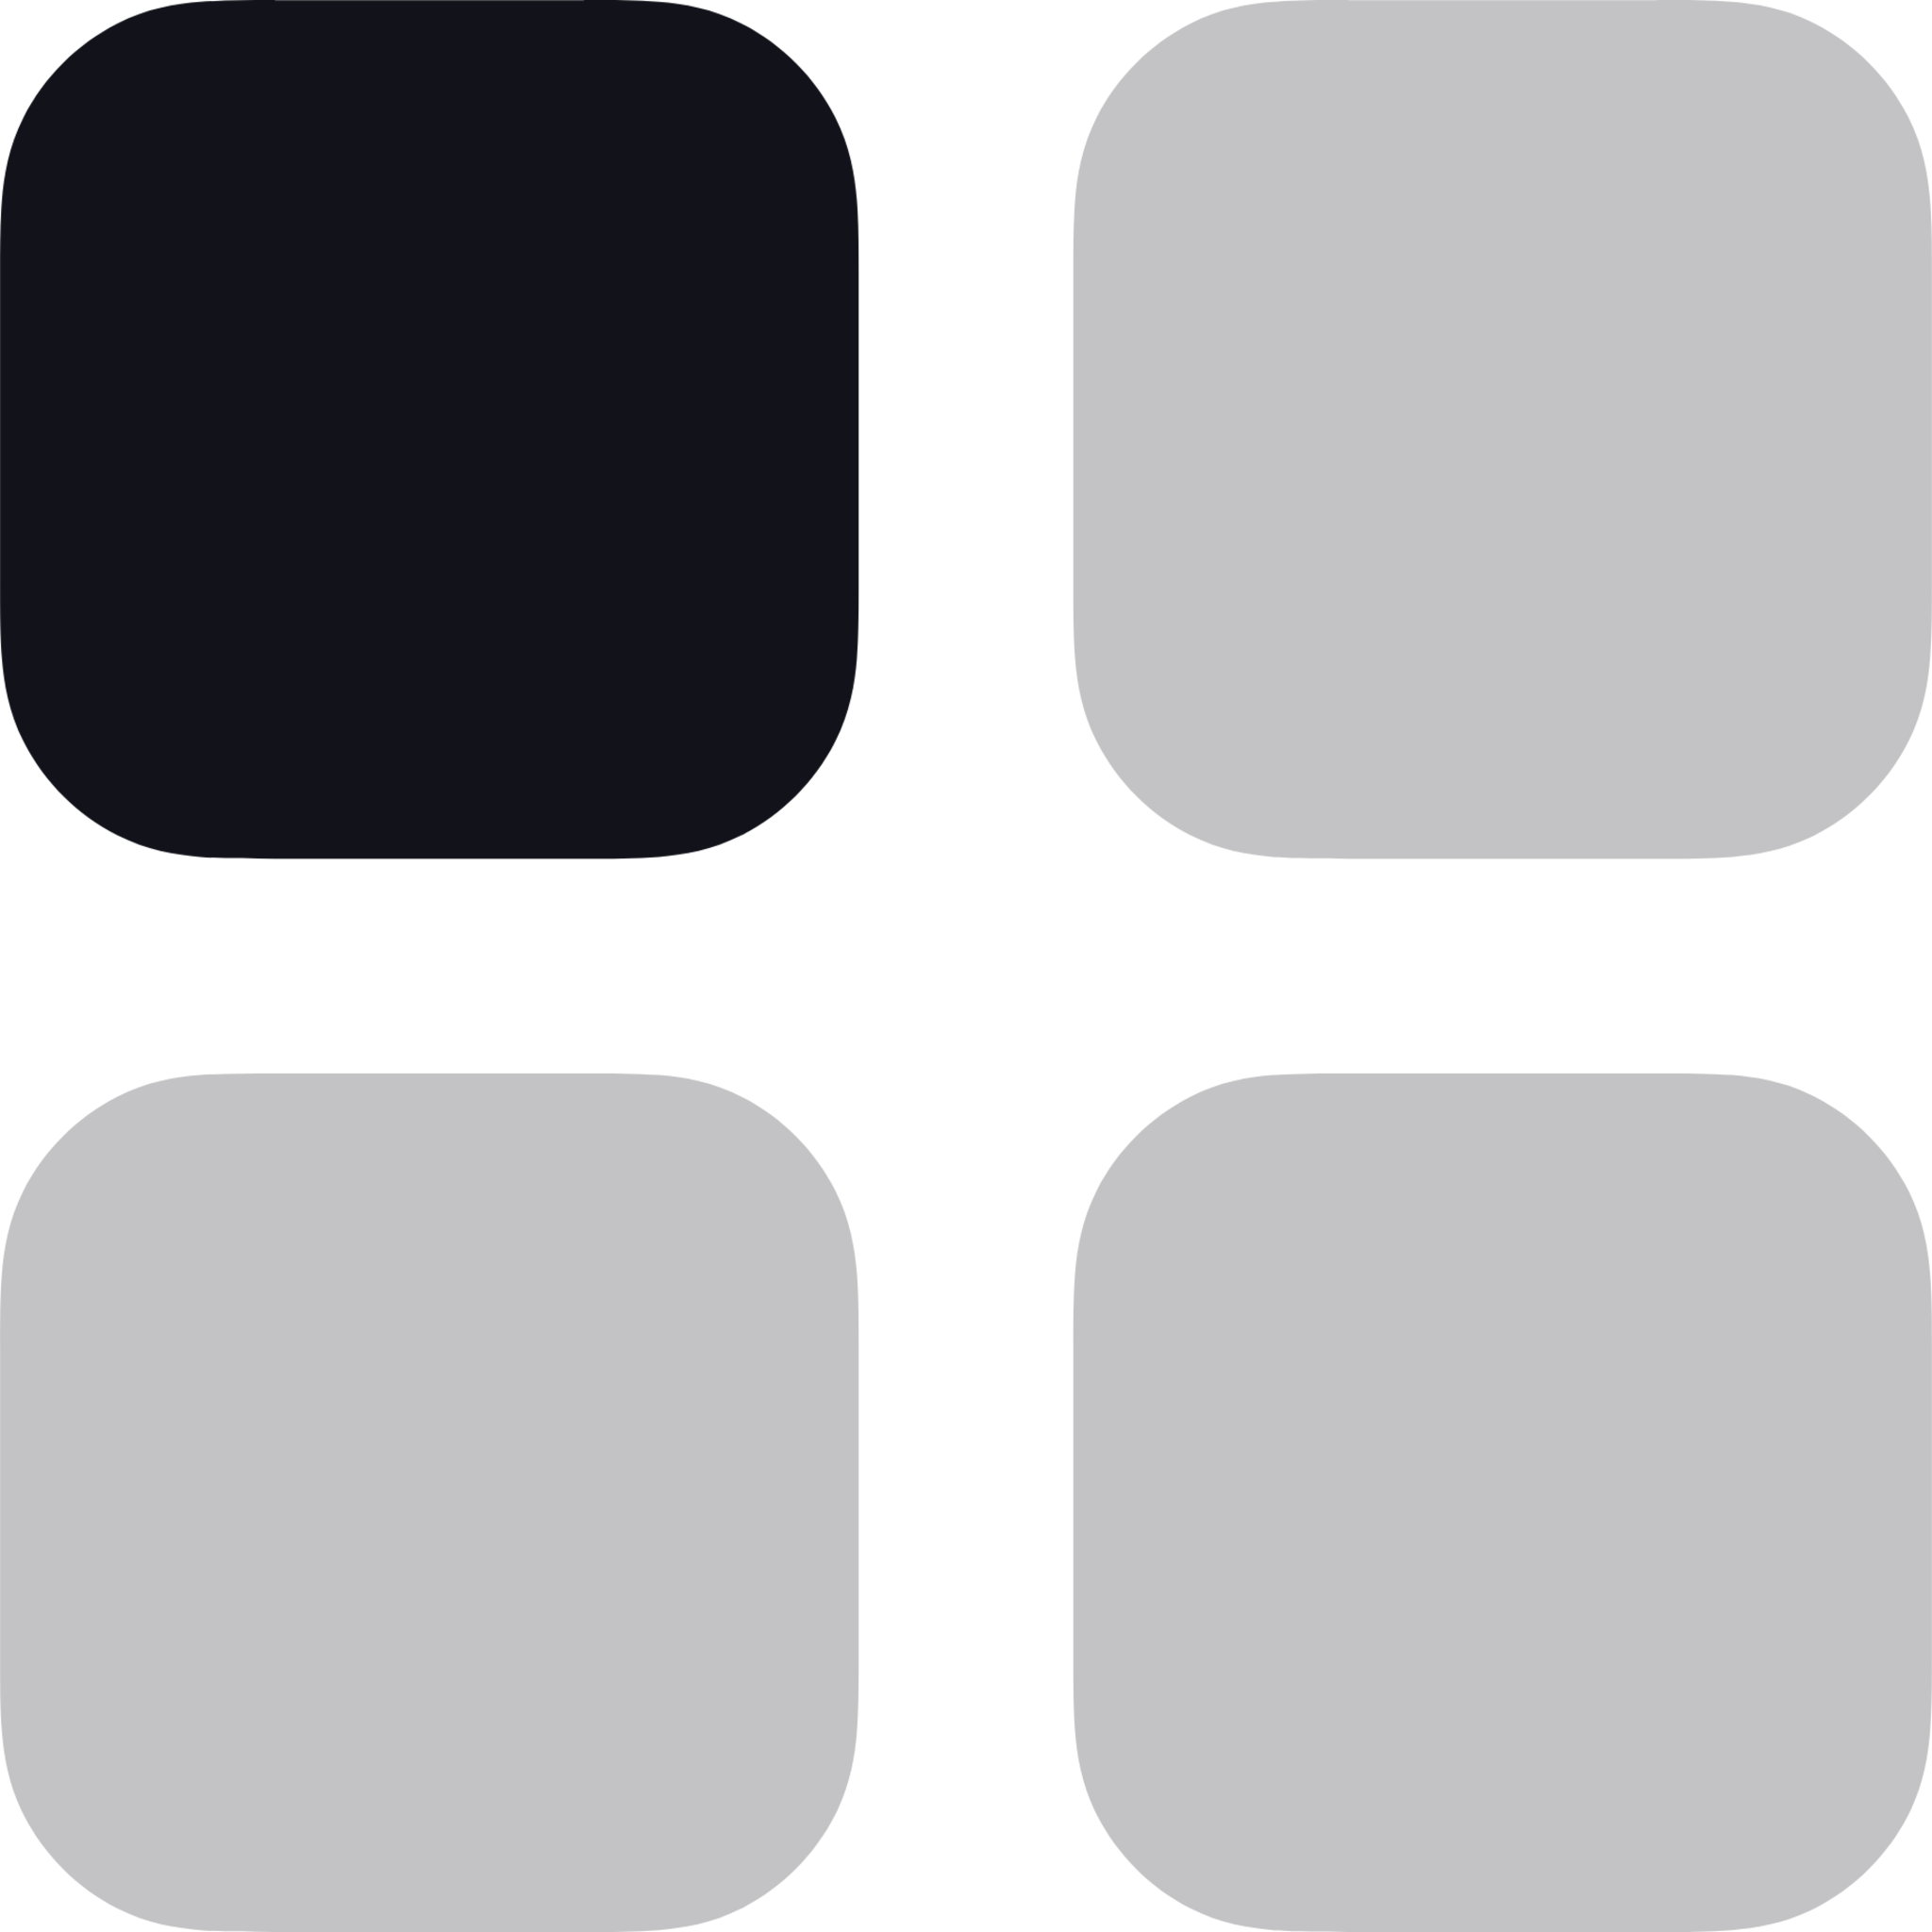 grid four 01 icon